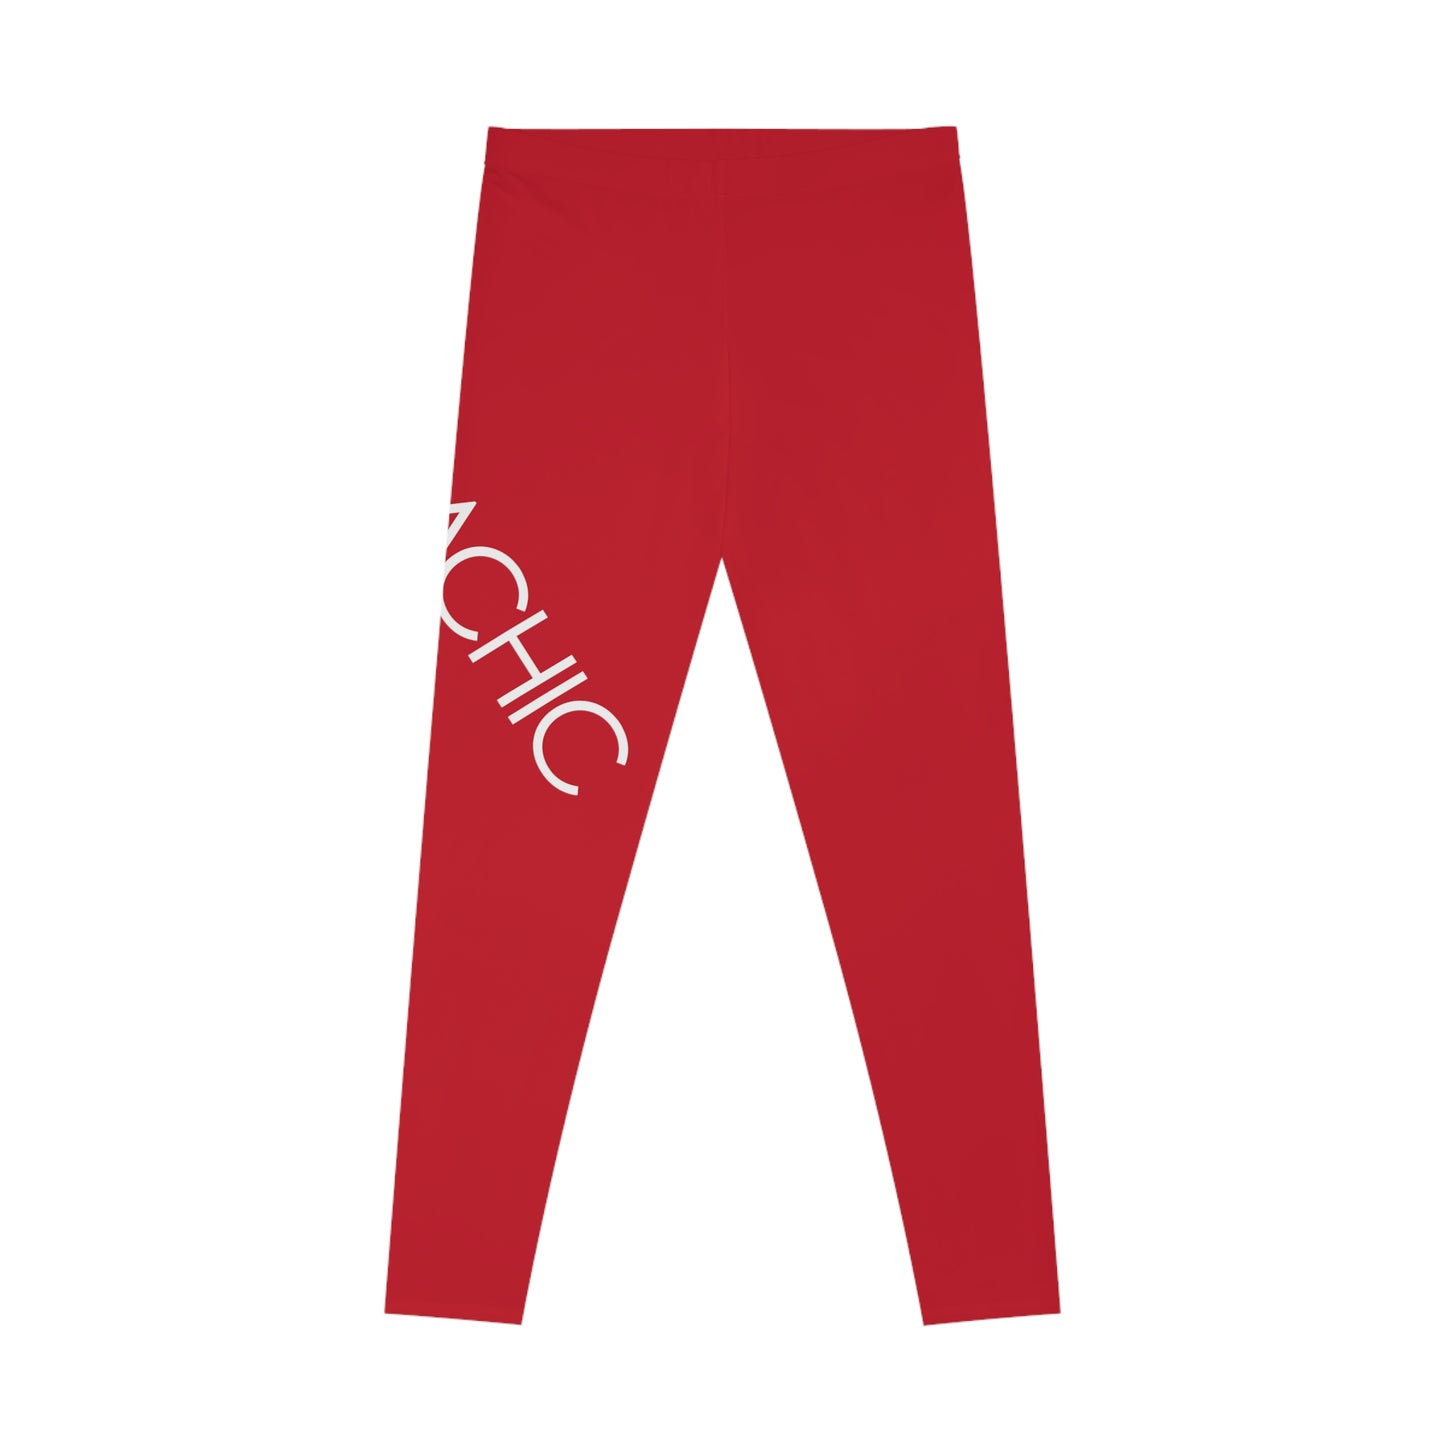 AlphaChic Leggings - Red (Leg Logo)